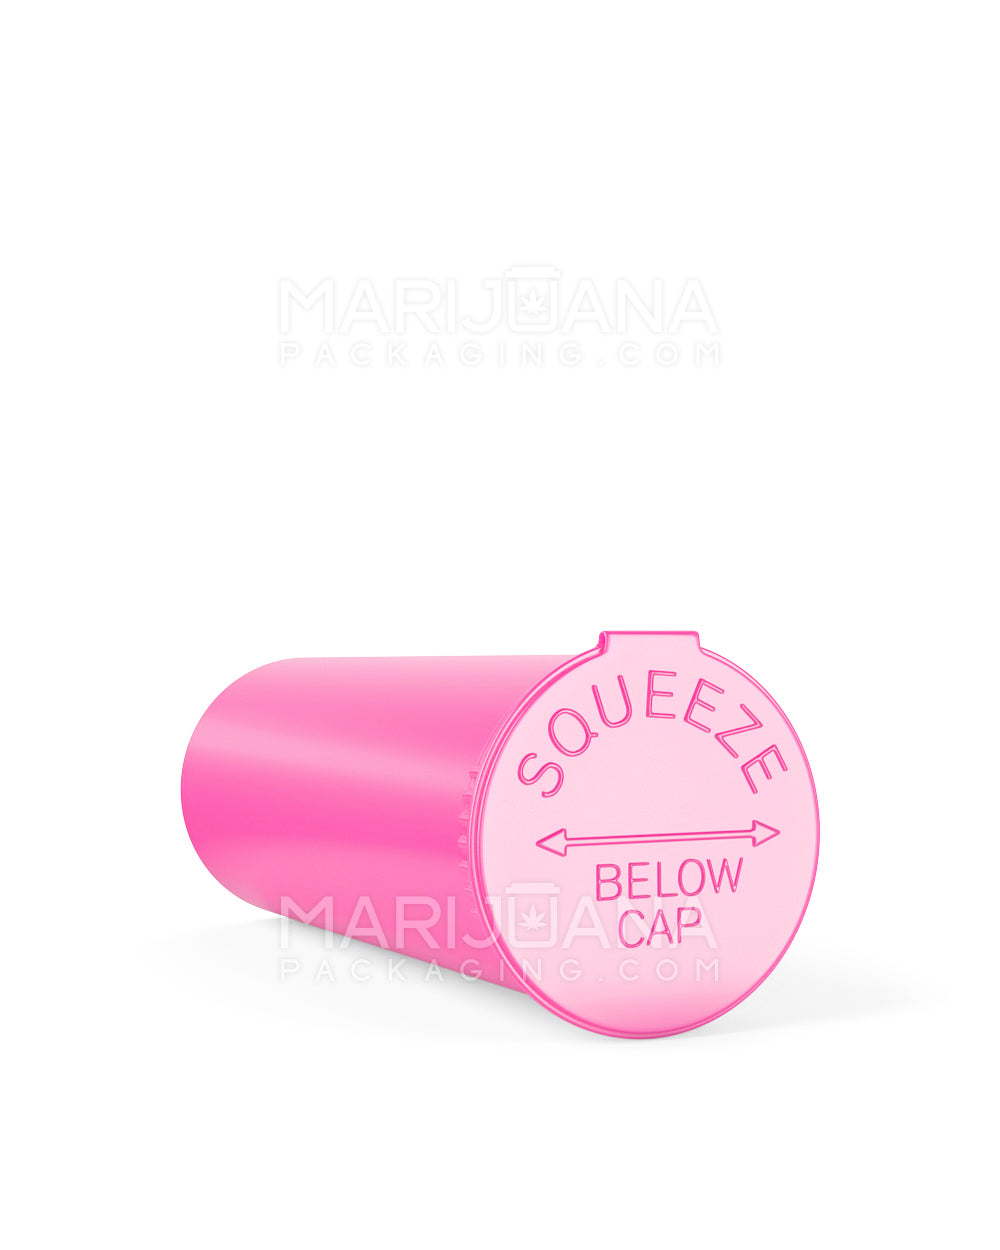 Child Resistant | Opaque Bubble Gum Pop Top Bottles | 60dr - 14g - 75 Count - 3